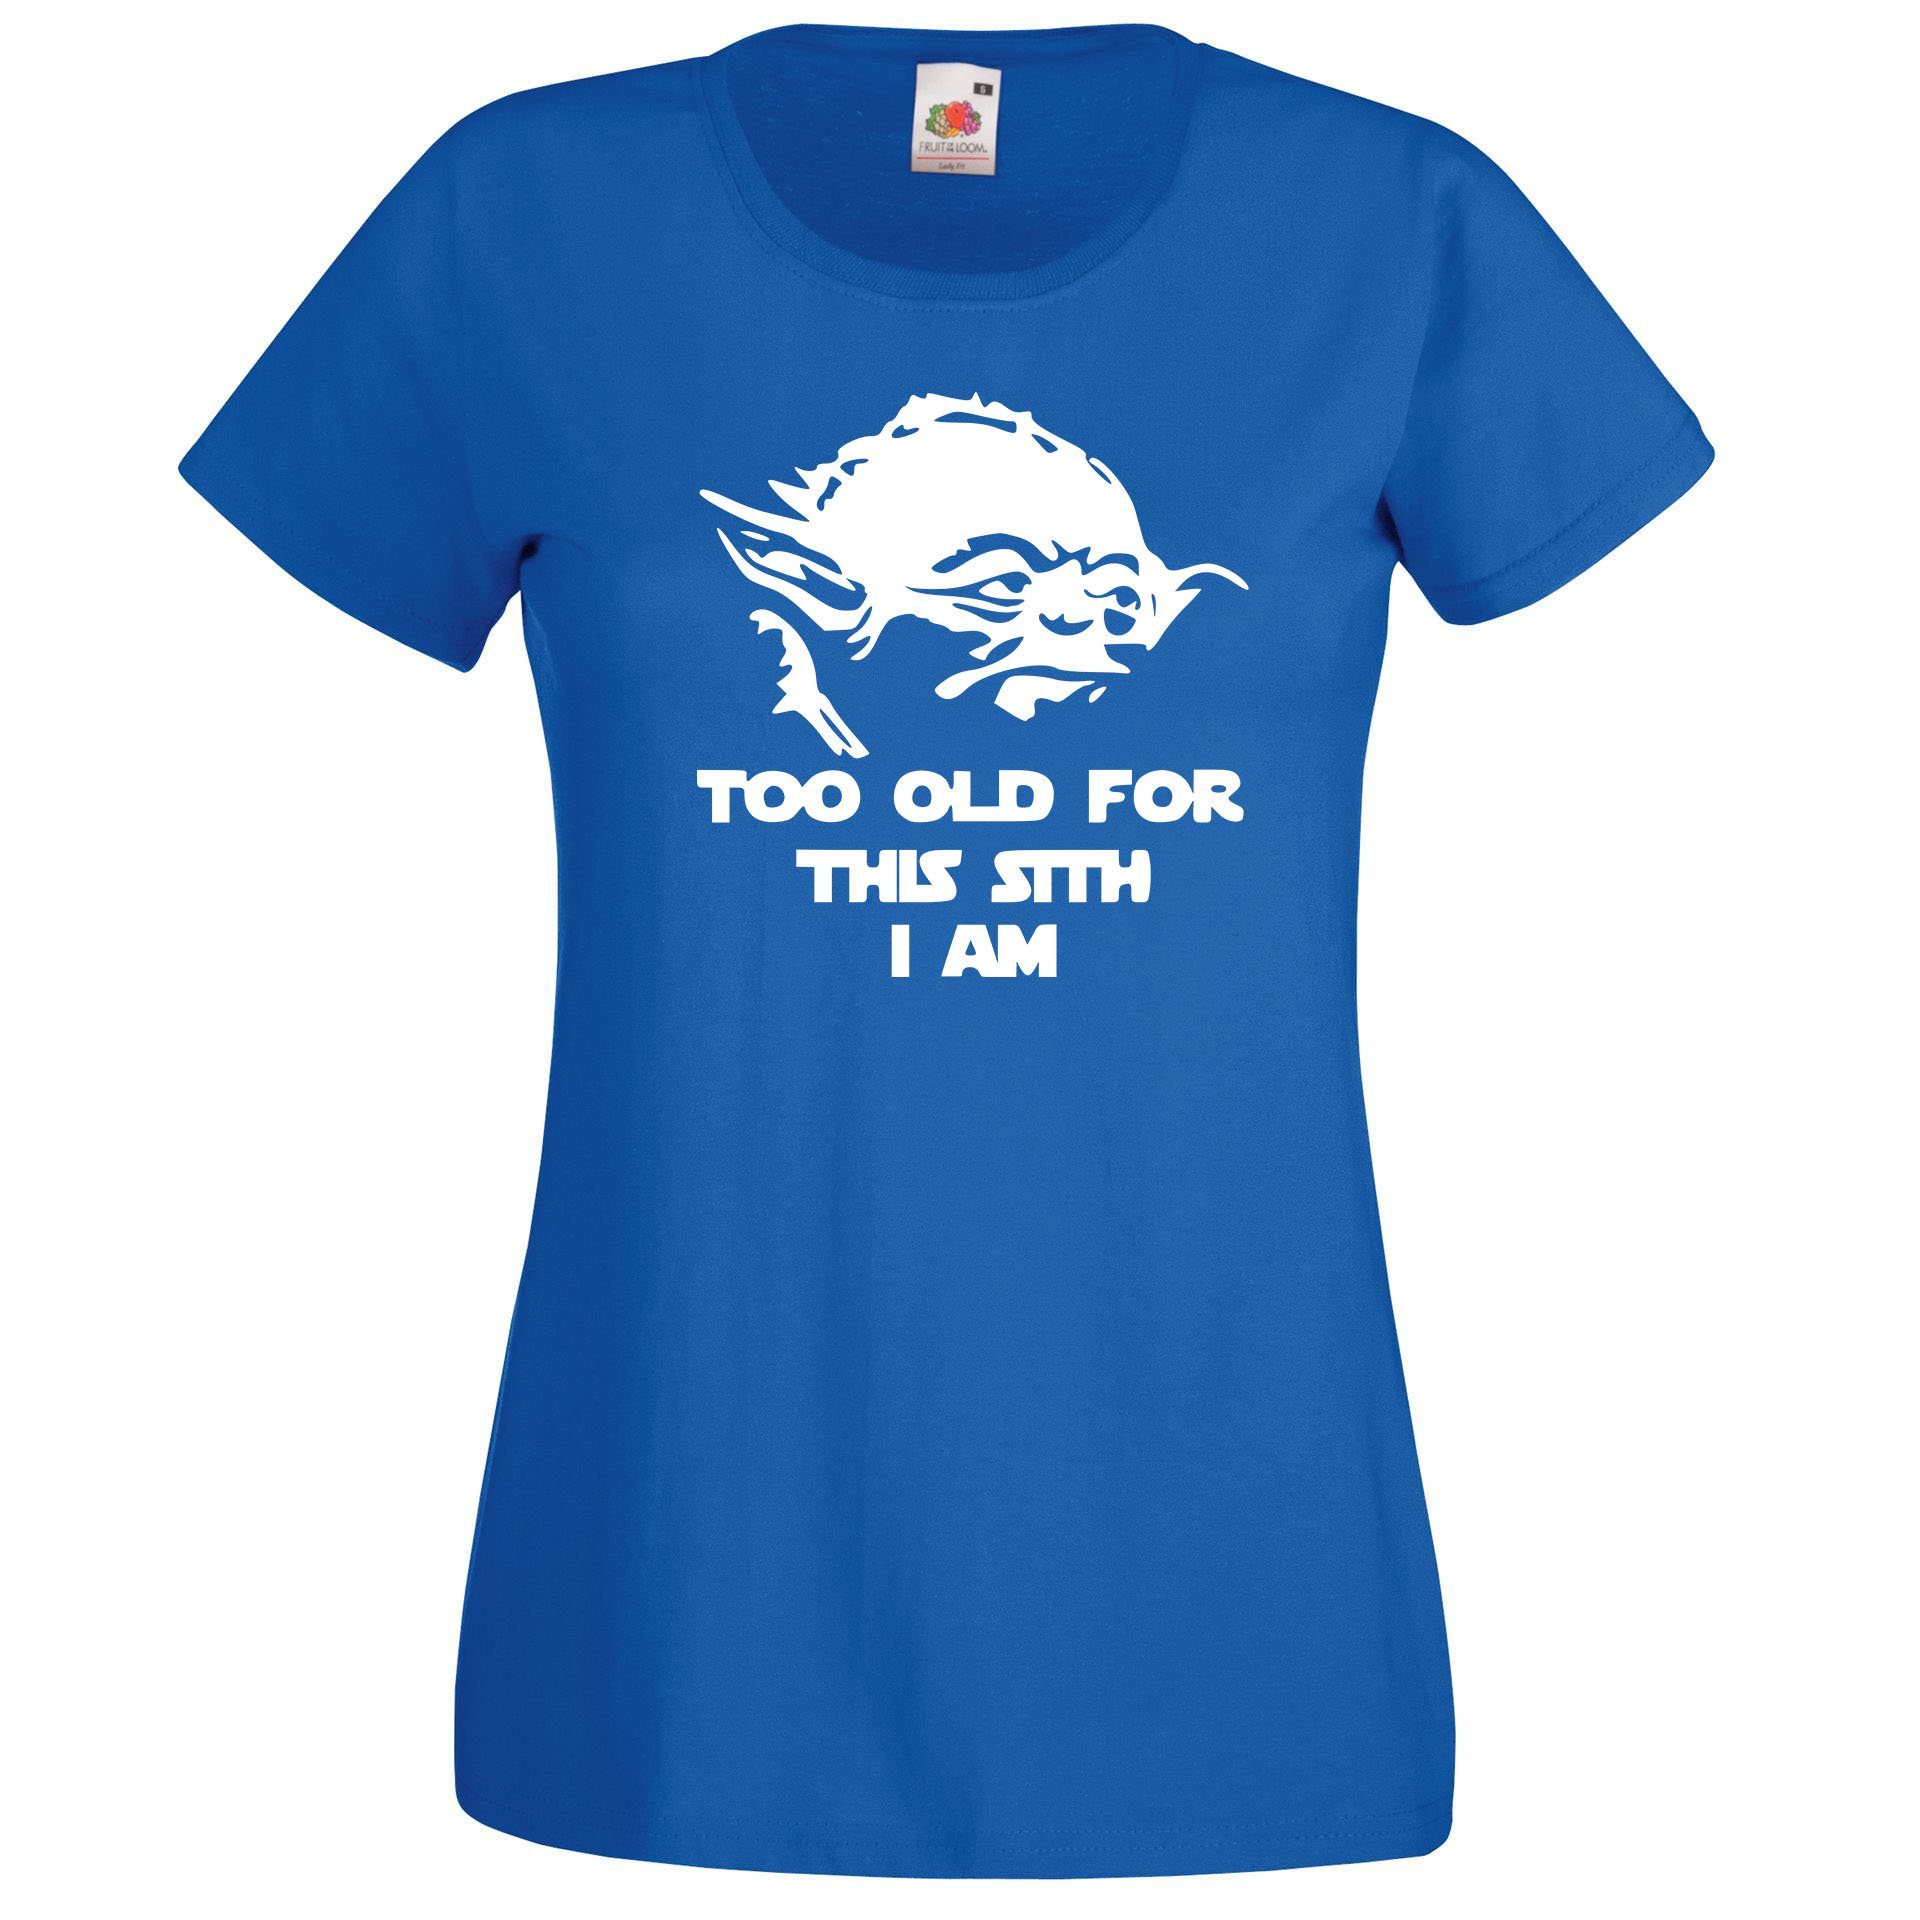 mit T-Shirt Youth Royalblau trendigem Old T-Shirt Damen Sith Spruch Designz Too